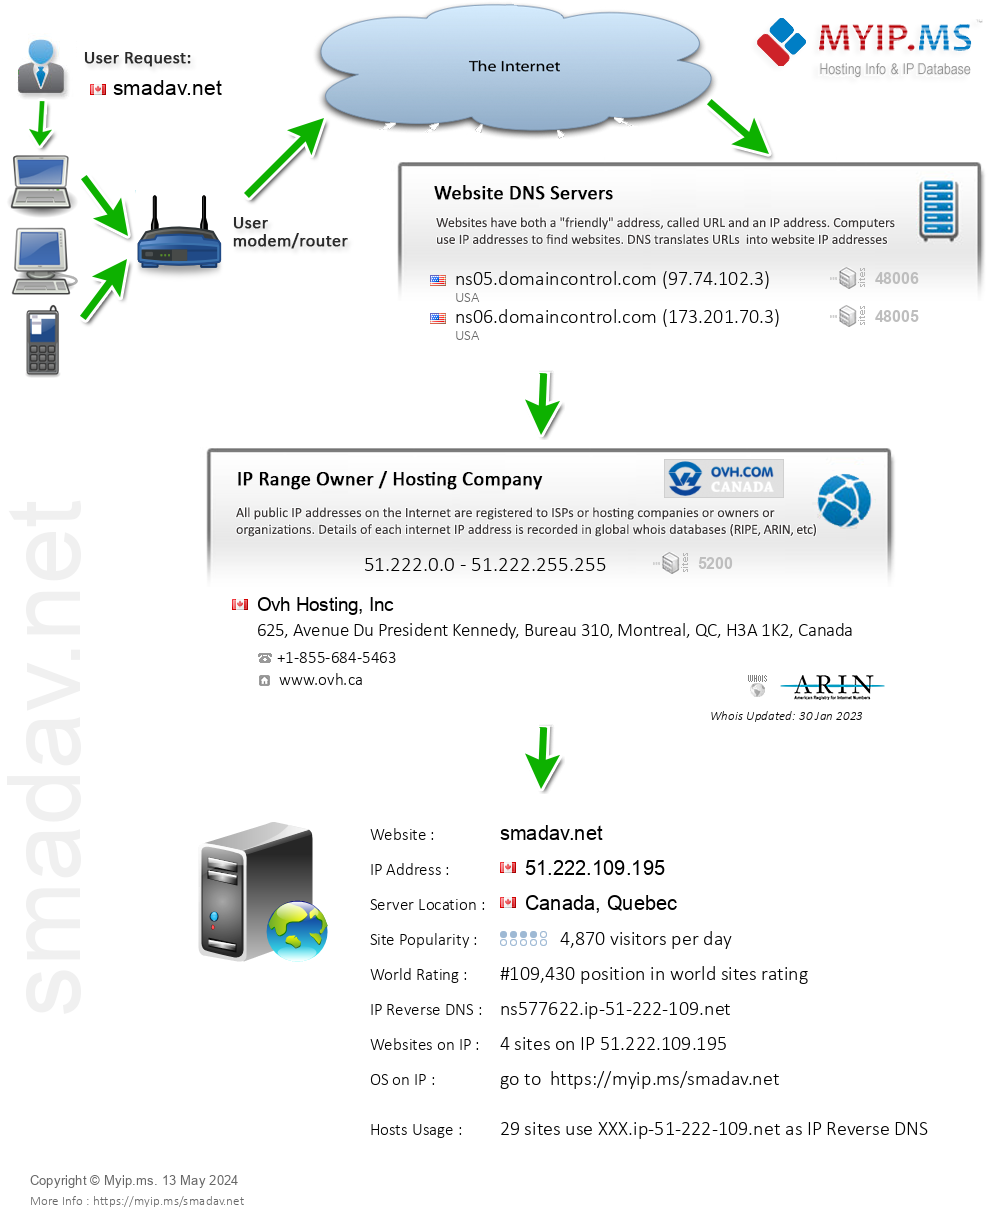 Smadav.net - Website Hosting Visual IP Diagram